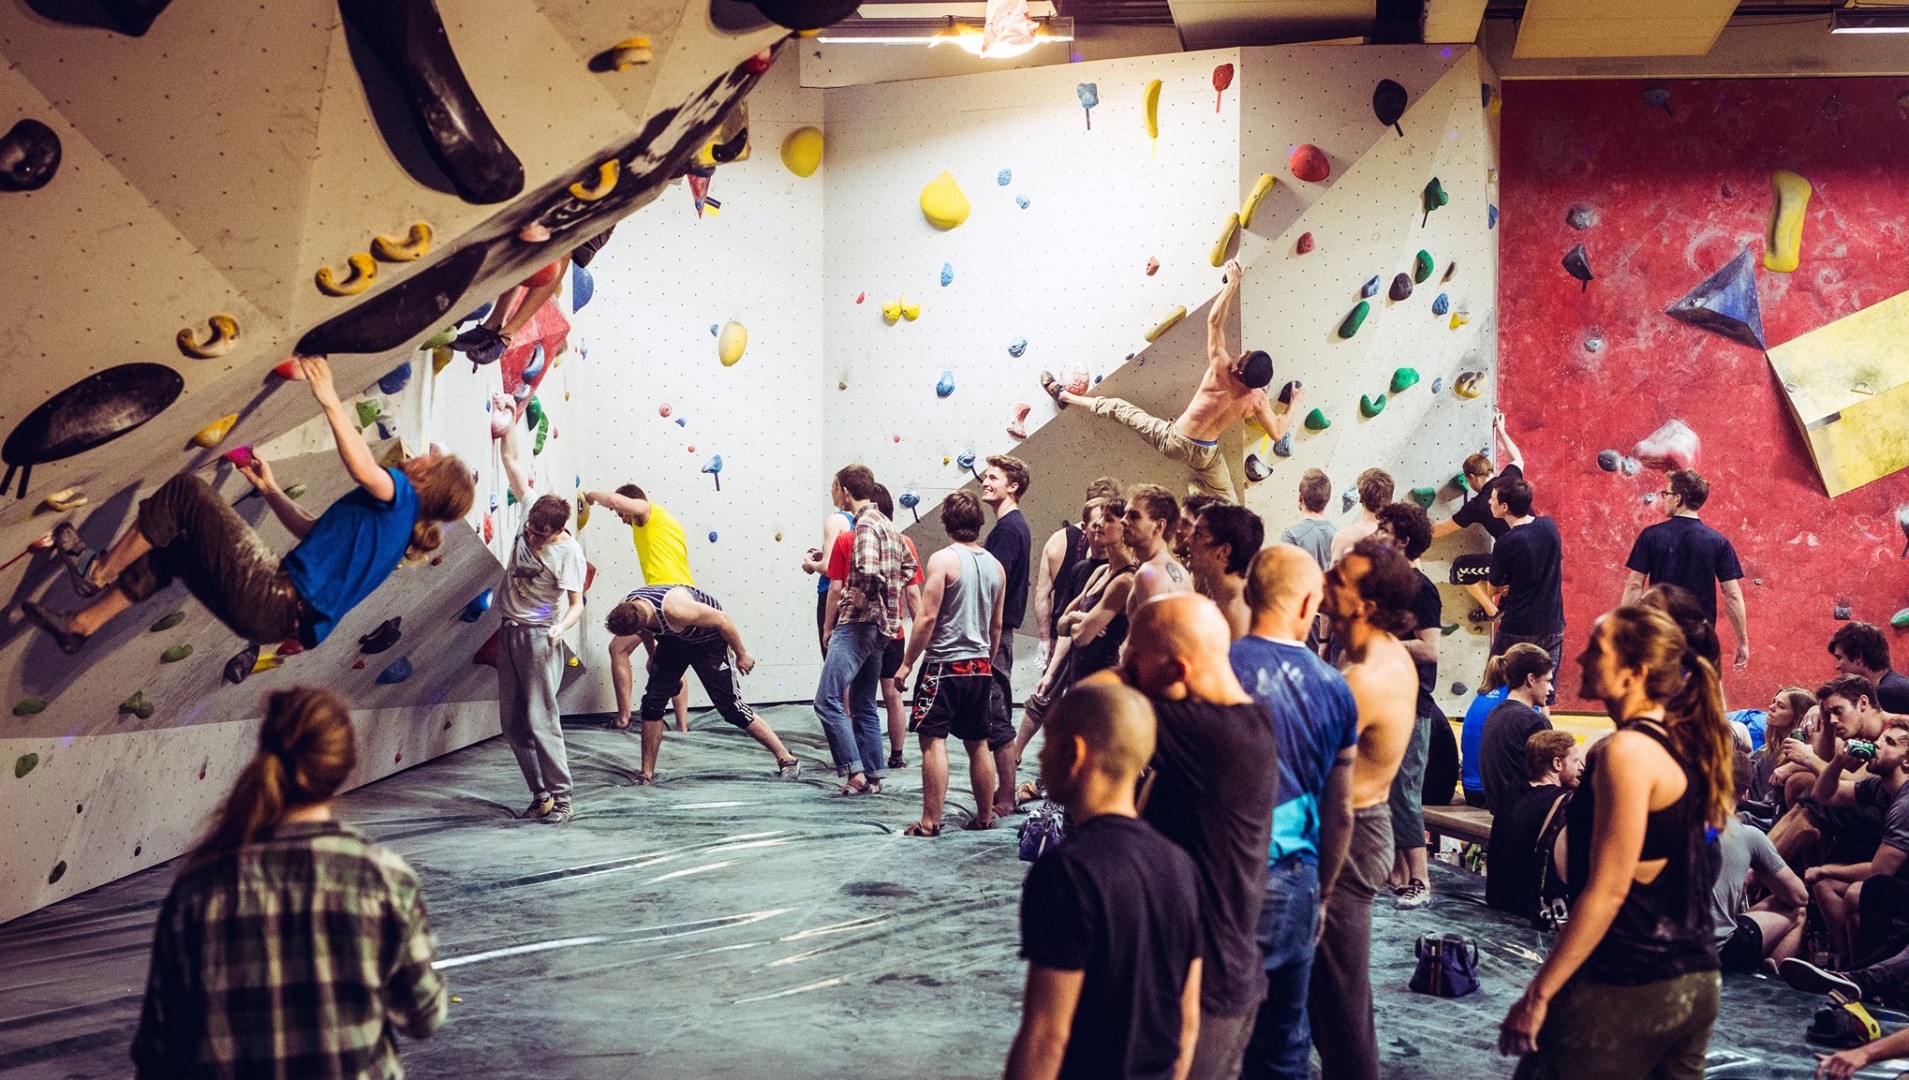 Prøv kræfter med klatring lørdag aften i Aarhus Boulders // Foto: Facebookbegivenhed